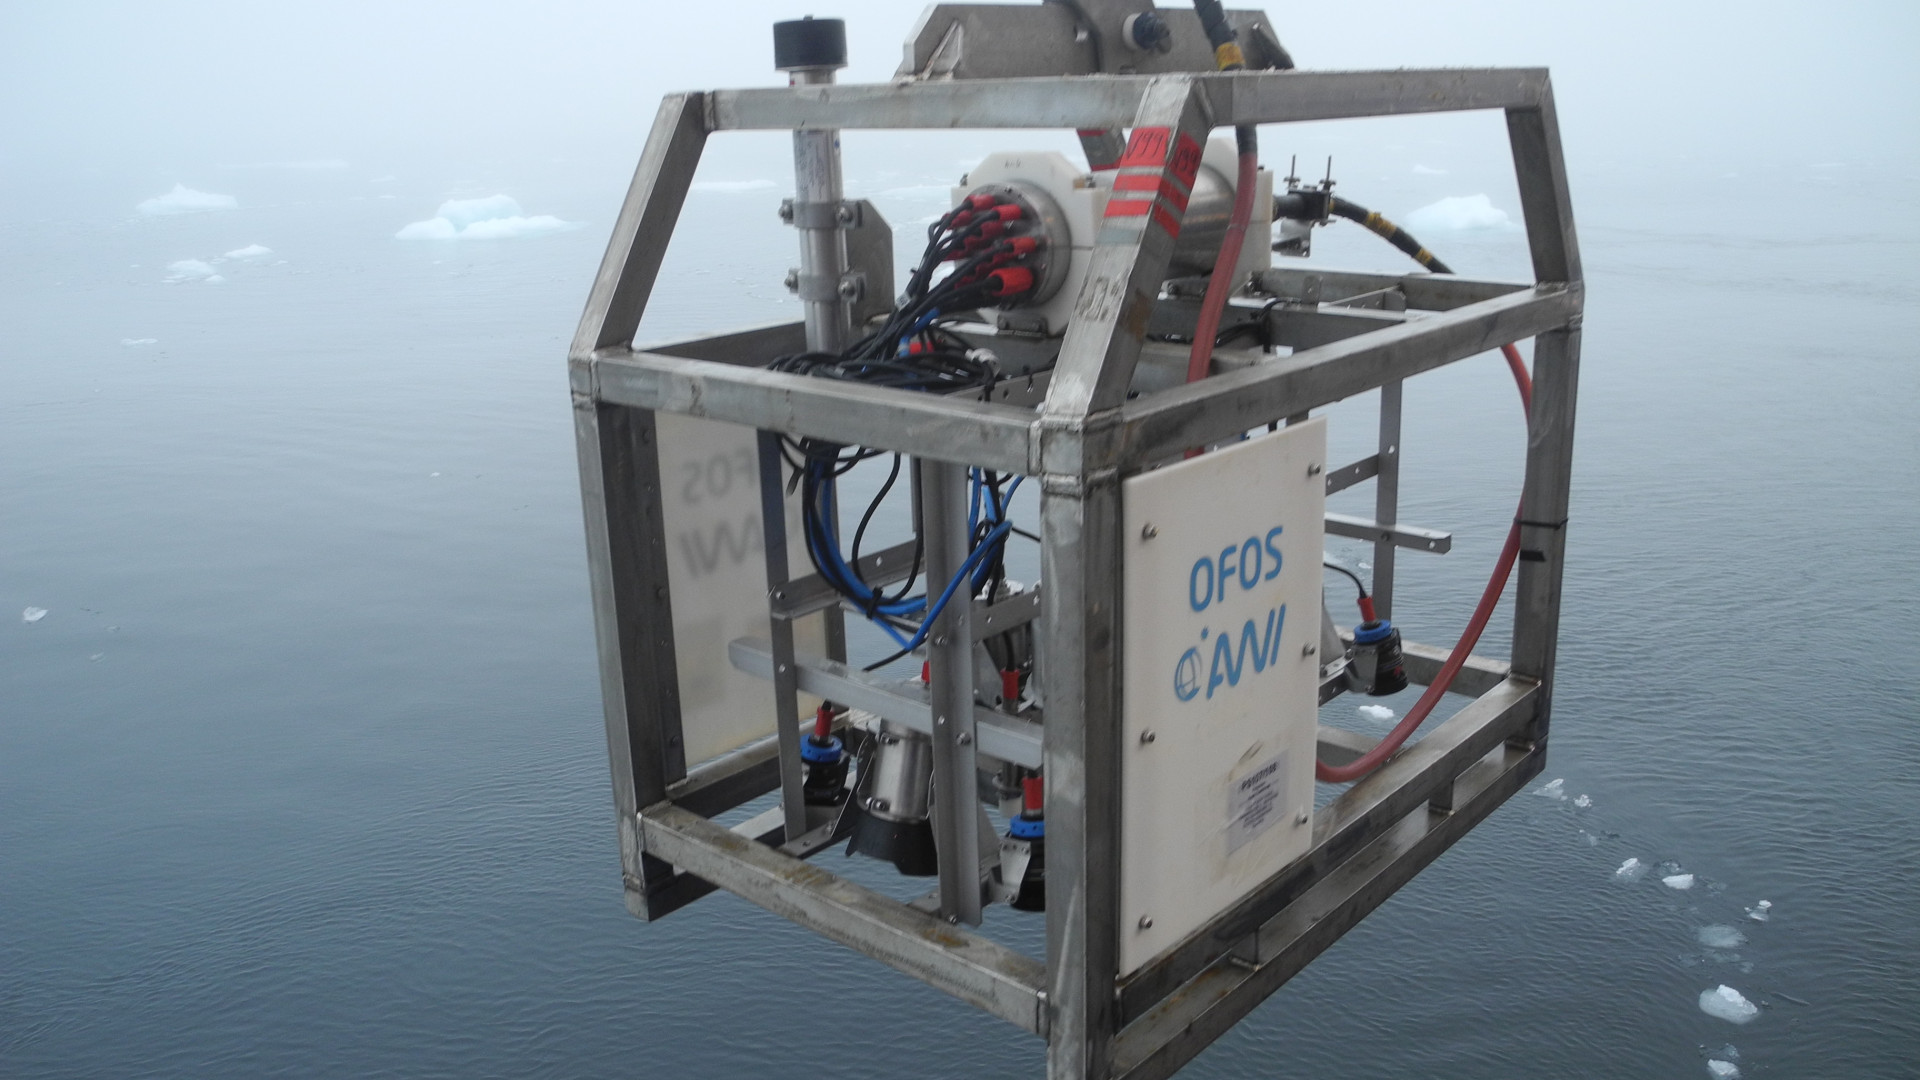 Wissenschaftliches Gerät in einem Metallkäfig schwebt über dem Wasser, auf dem kleine Eisschollen treiben